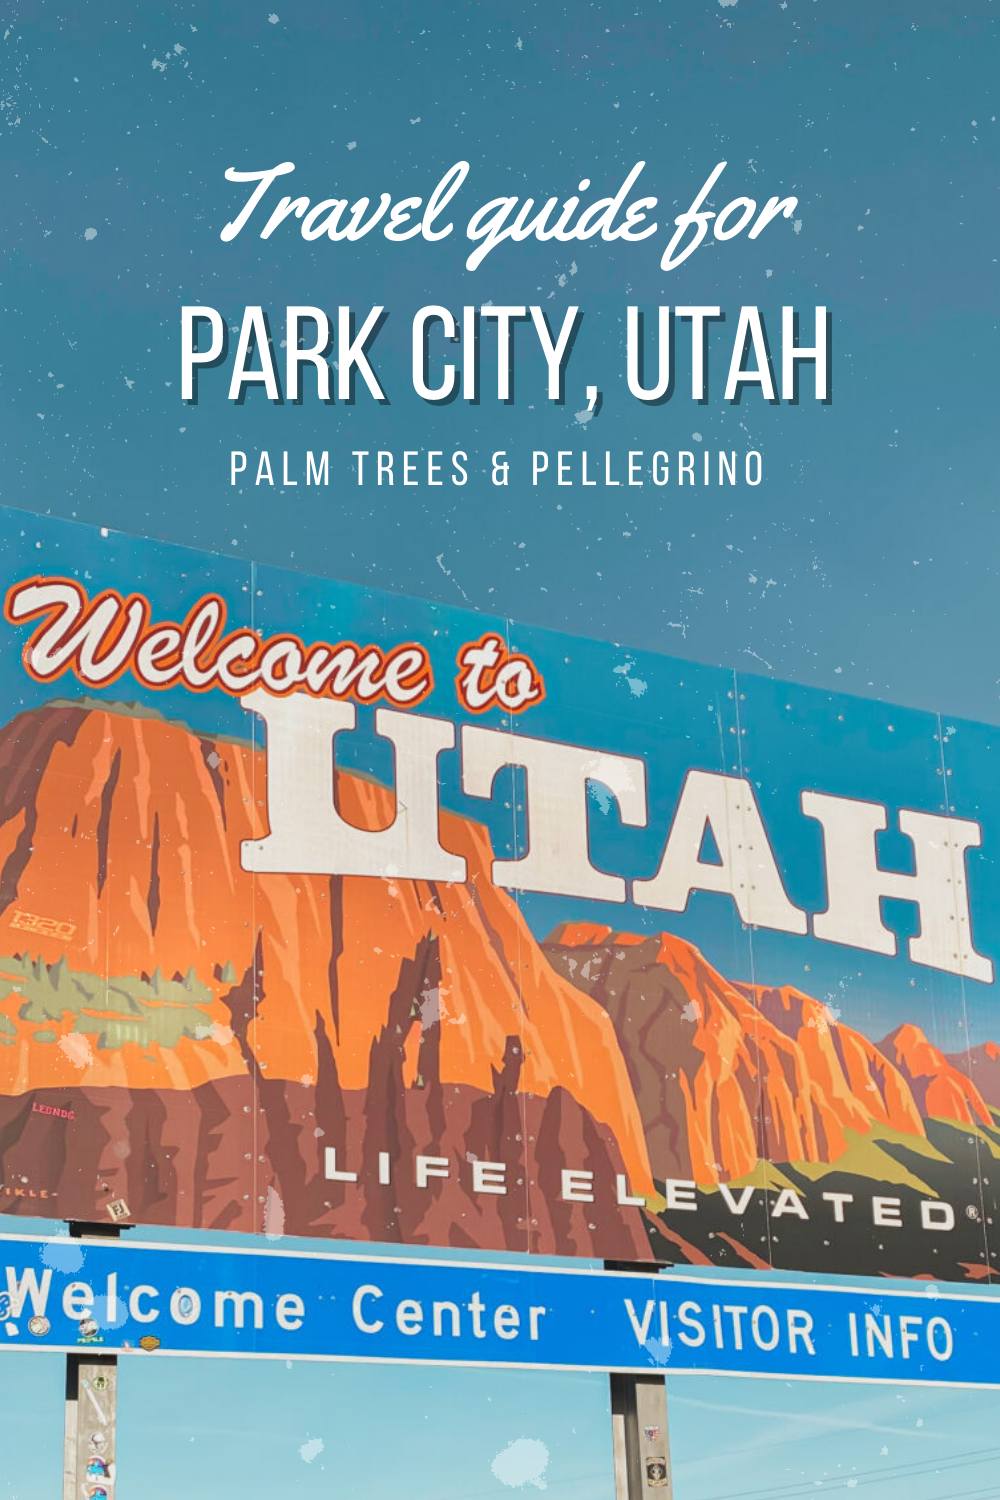 Park City Utah Travel Guide - Palm Trees and Pellegrino travel blogger tips